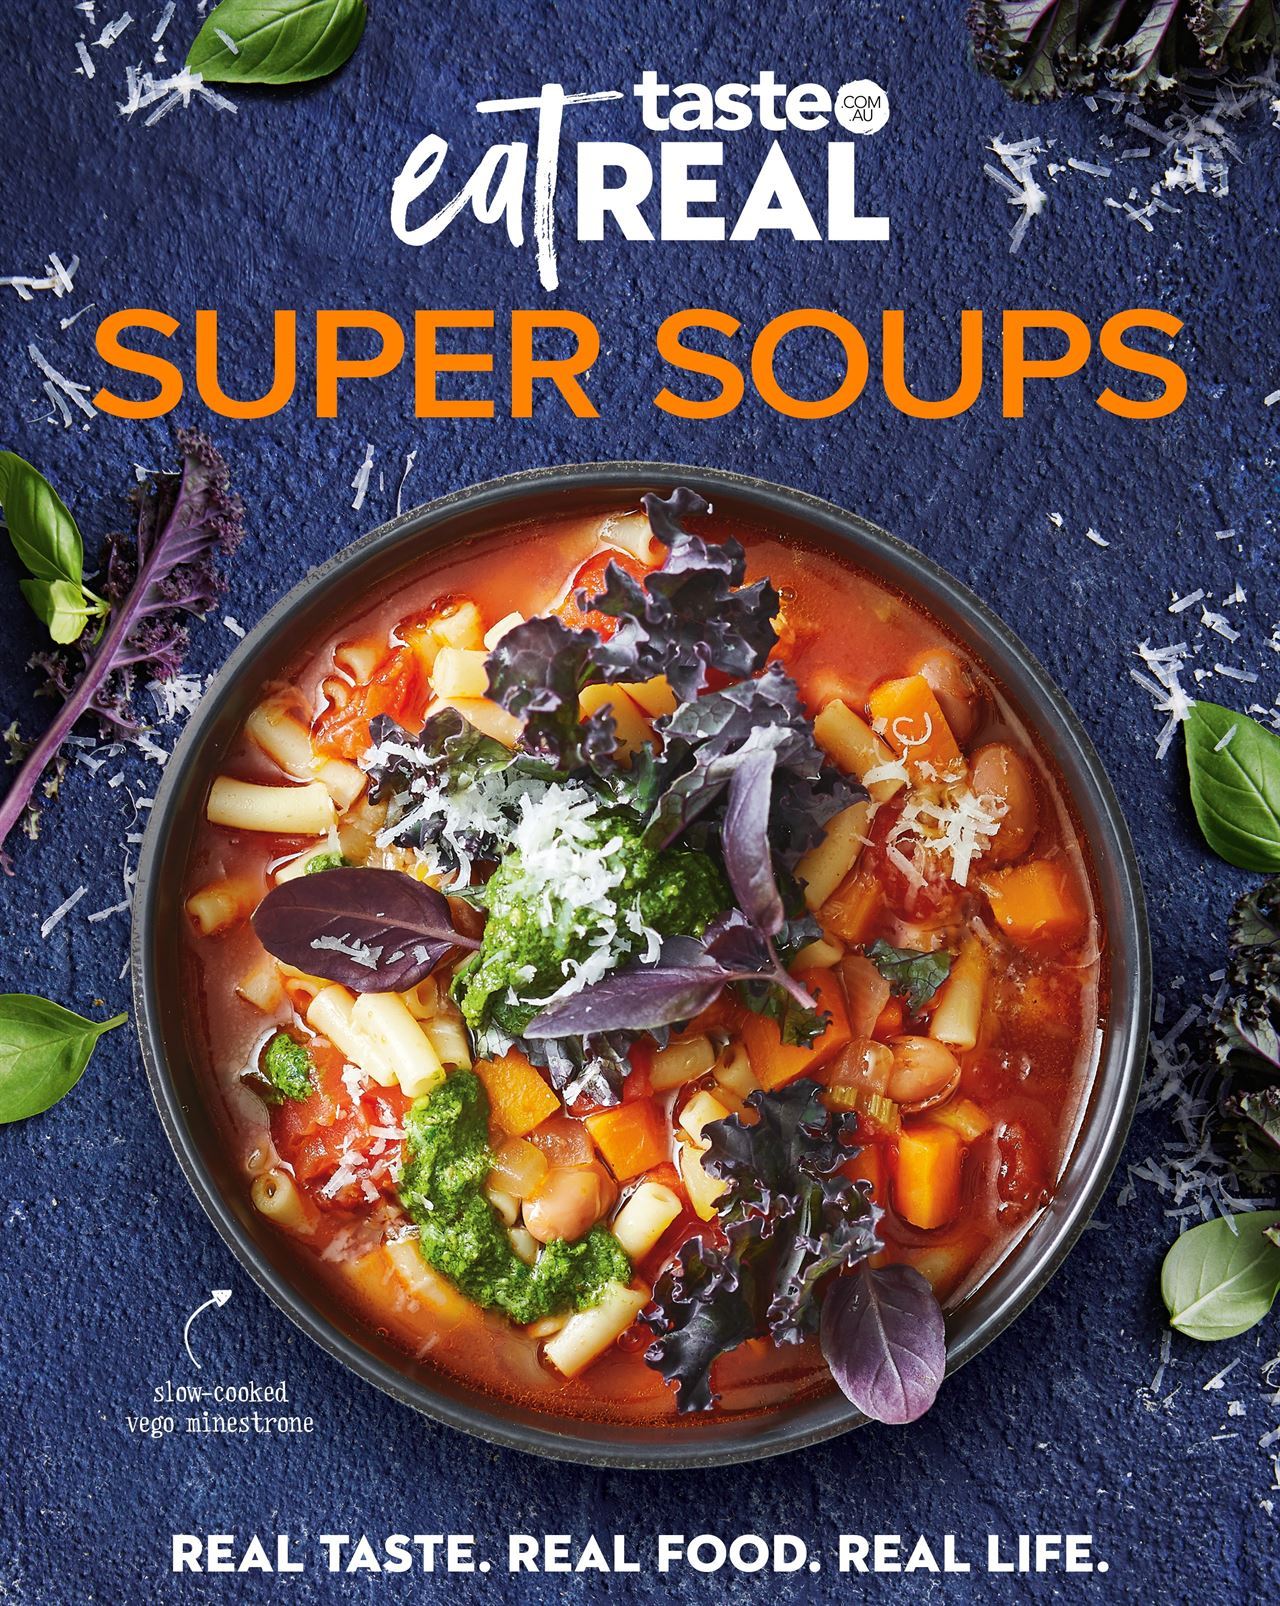 taste.com.au Eat Real - Super Soups